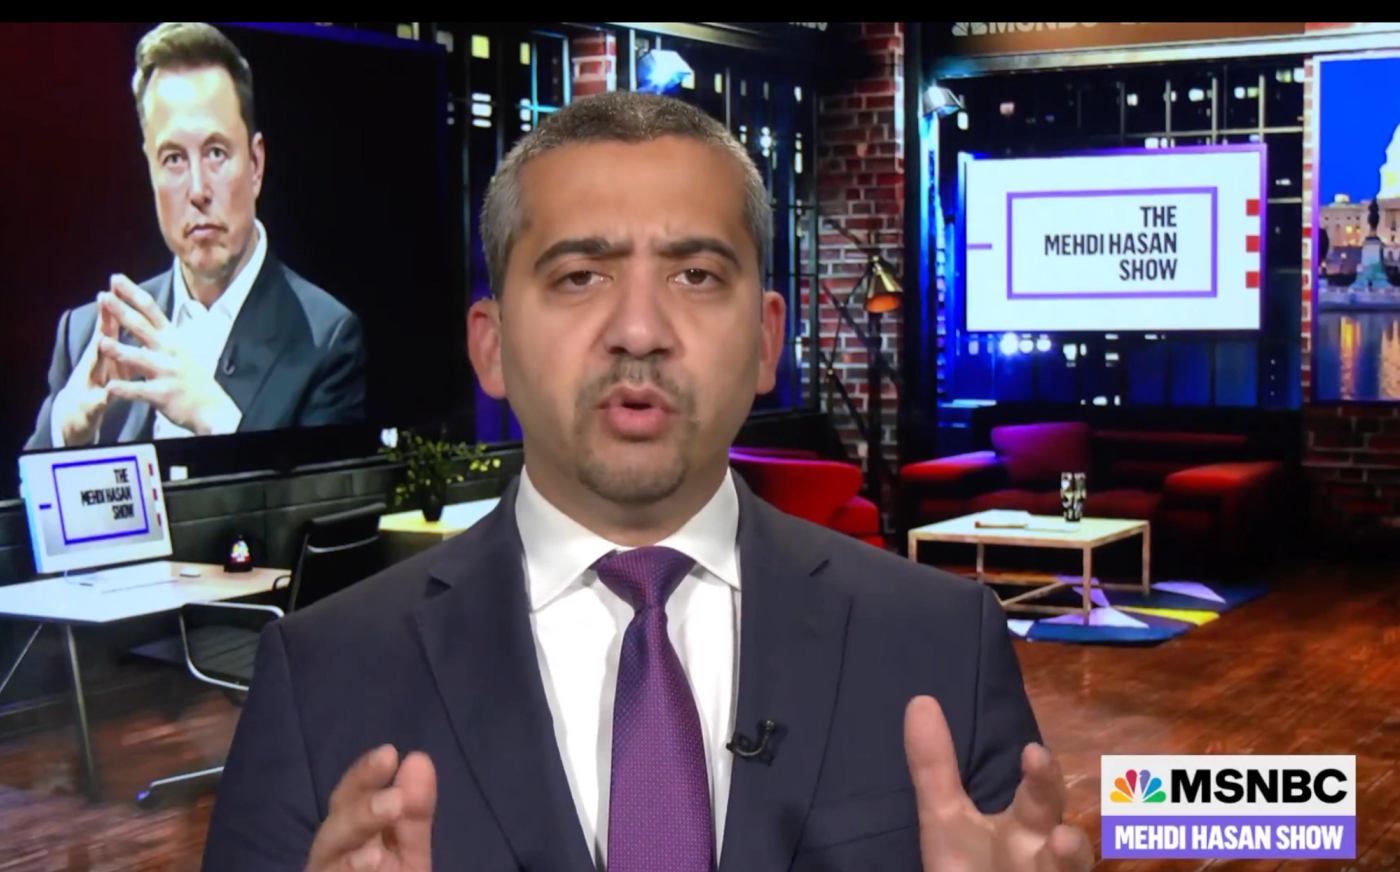 MSNBC cancels Mehdi Hasan’s show (semafor.com)